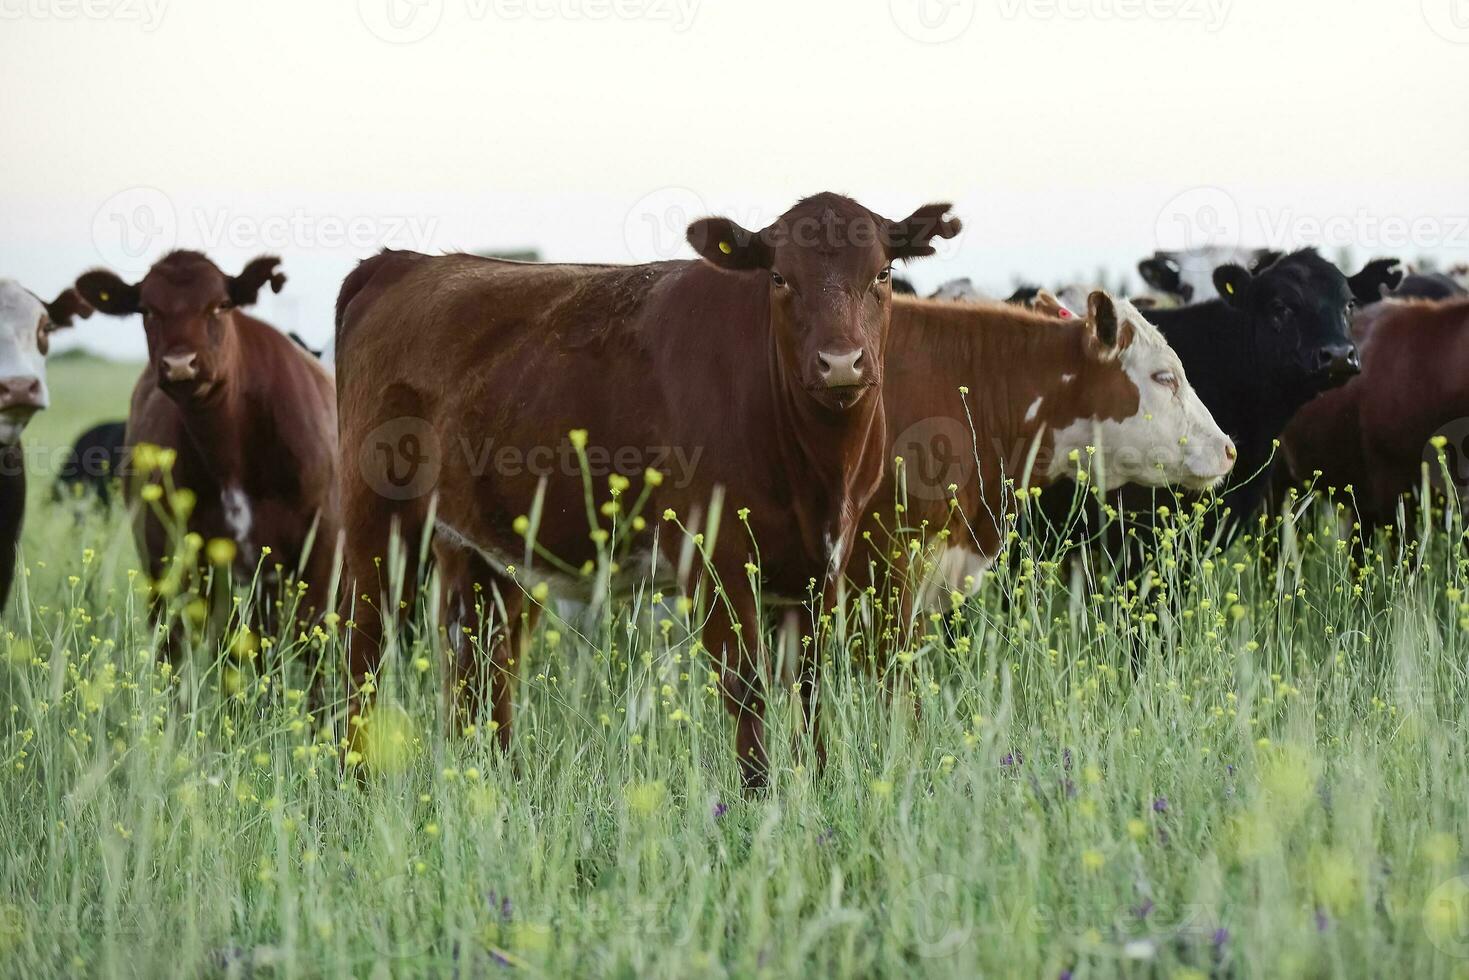 das Vieh im Argentinien Landschaft, Pampas, Argentinien foto